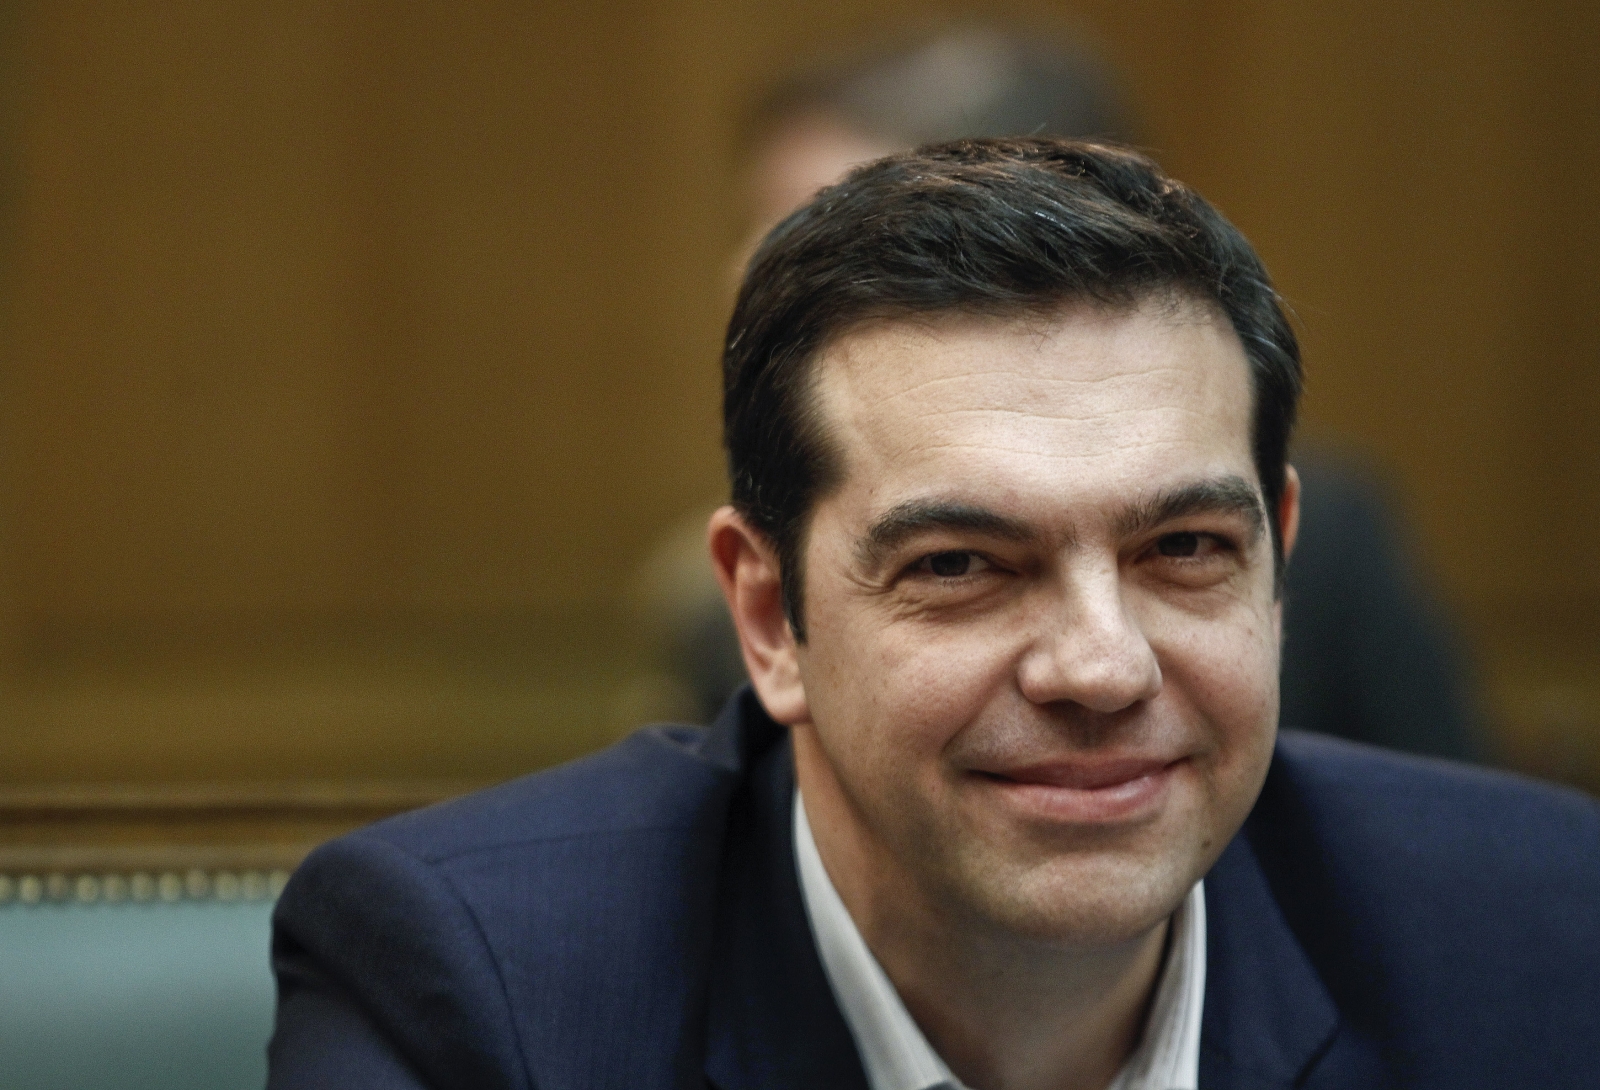 ΣΥΡΙΖΑ: Ολοκληρώθηκε η συνεδρίαση της Πολιτικής Γραμματείας – «Στηρίζουμε τις προσπάθειες για καθαρή λύση για το χρέος»